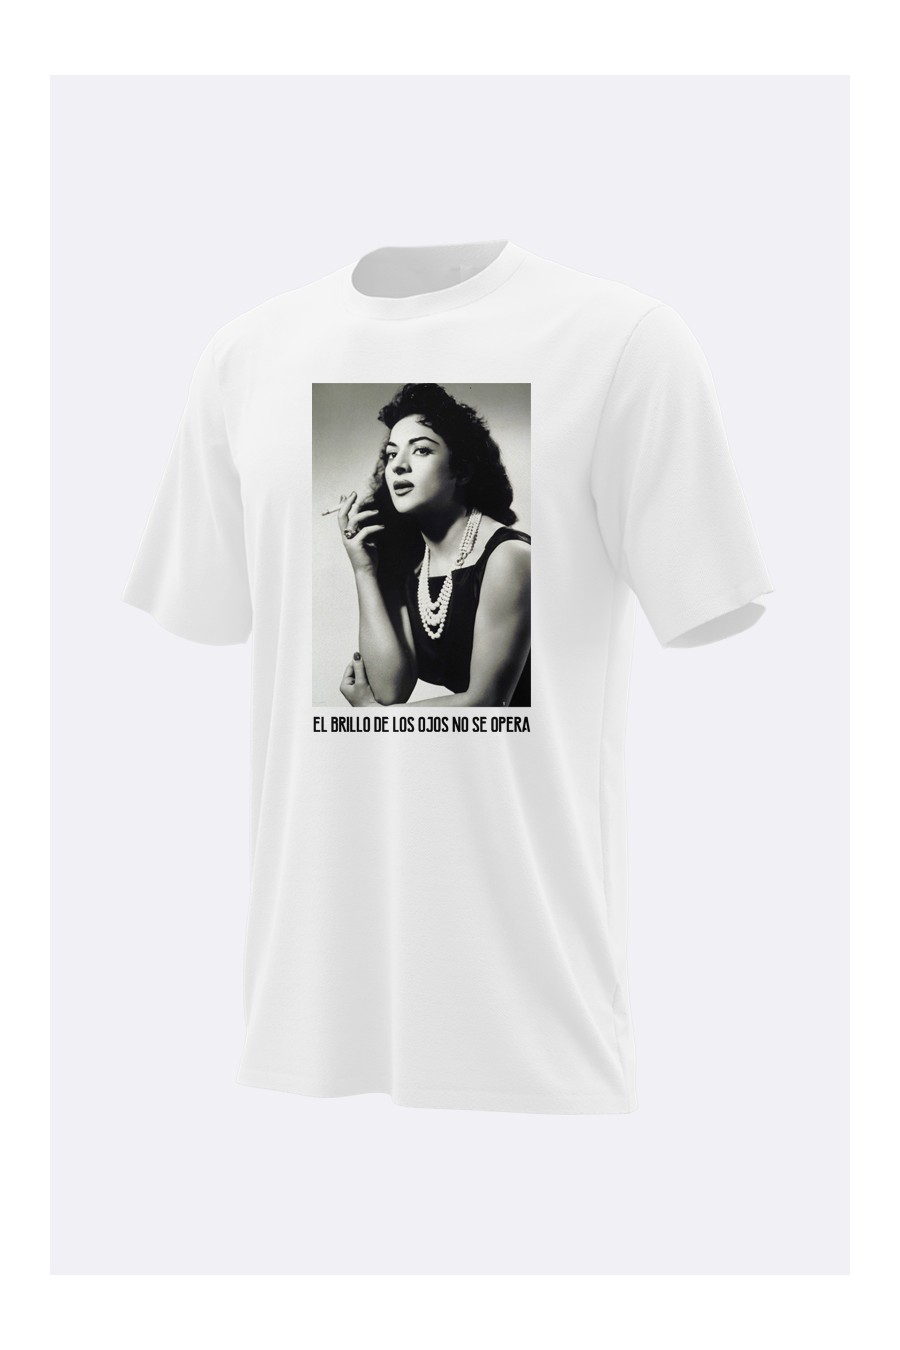 correr Medicina preposición Camiseta Lola Flores- Camiseta personalizada RotusolLaboral.com Talla S  Color Blanco